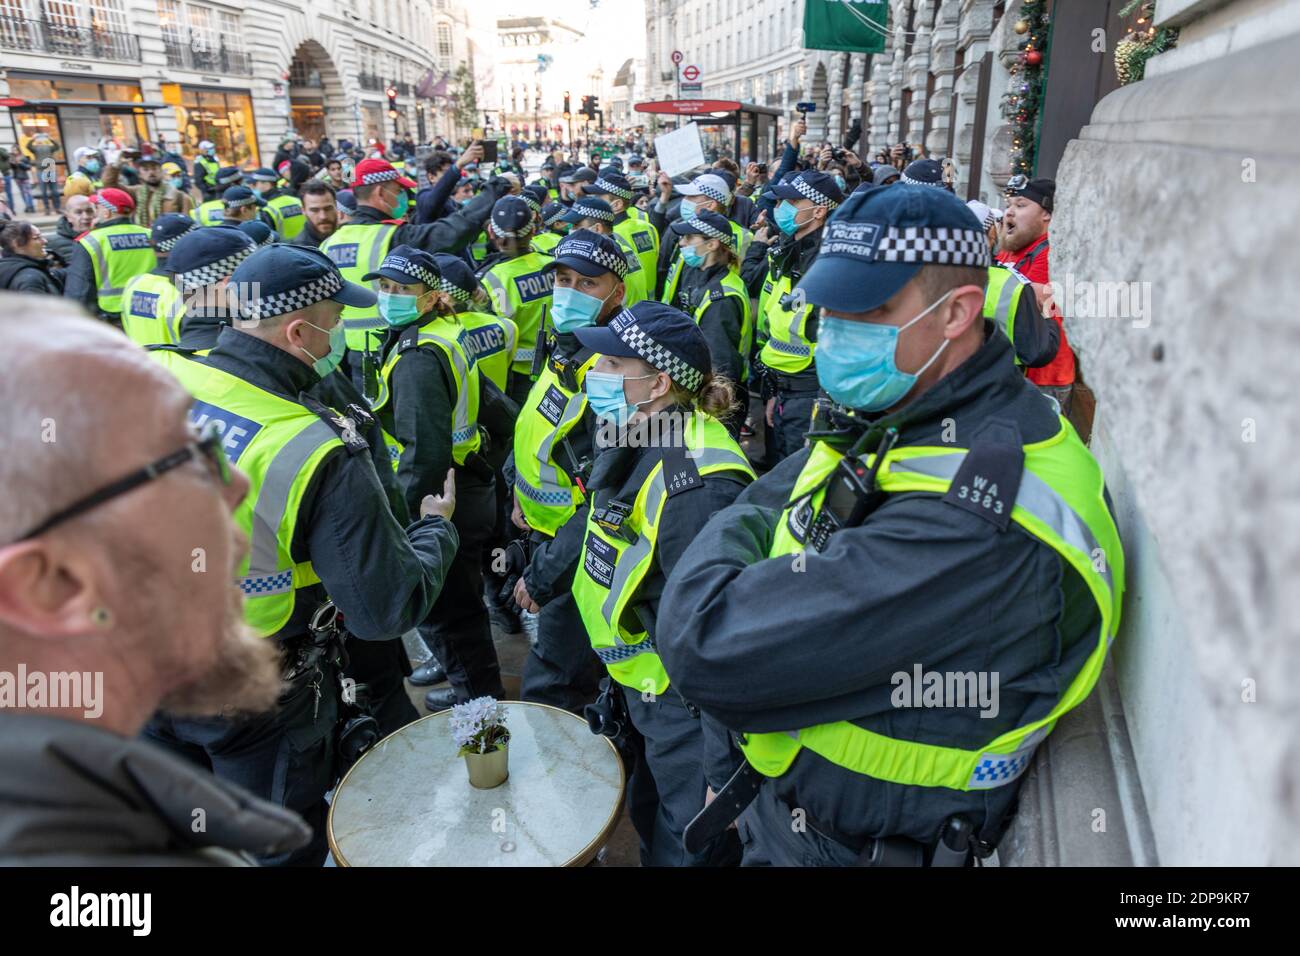 Londres, Inglaterra. 19 de diciembre de 2020. Protesta contra el cierre en la Plaza del Parlamento. Fotógrafo : Brian Duffy Foto de stock